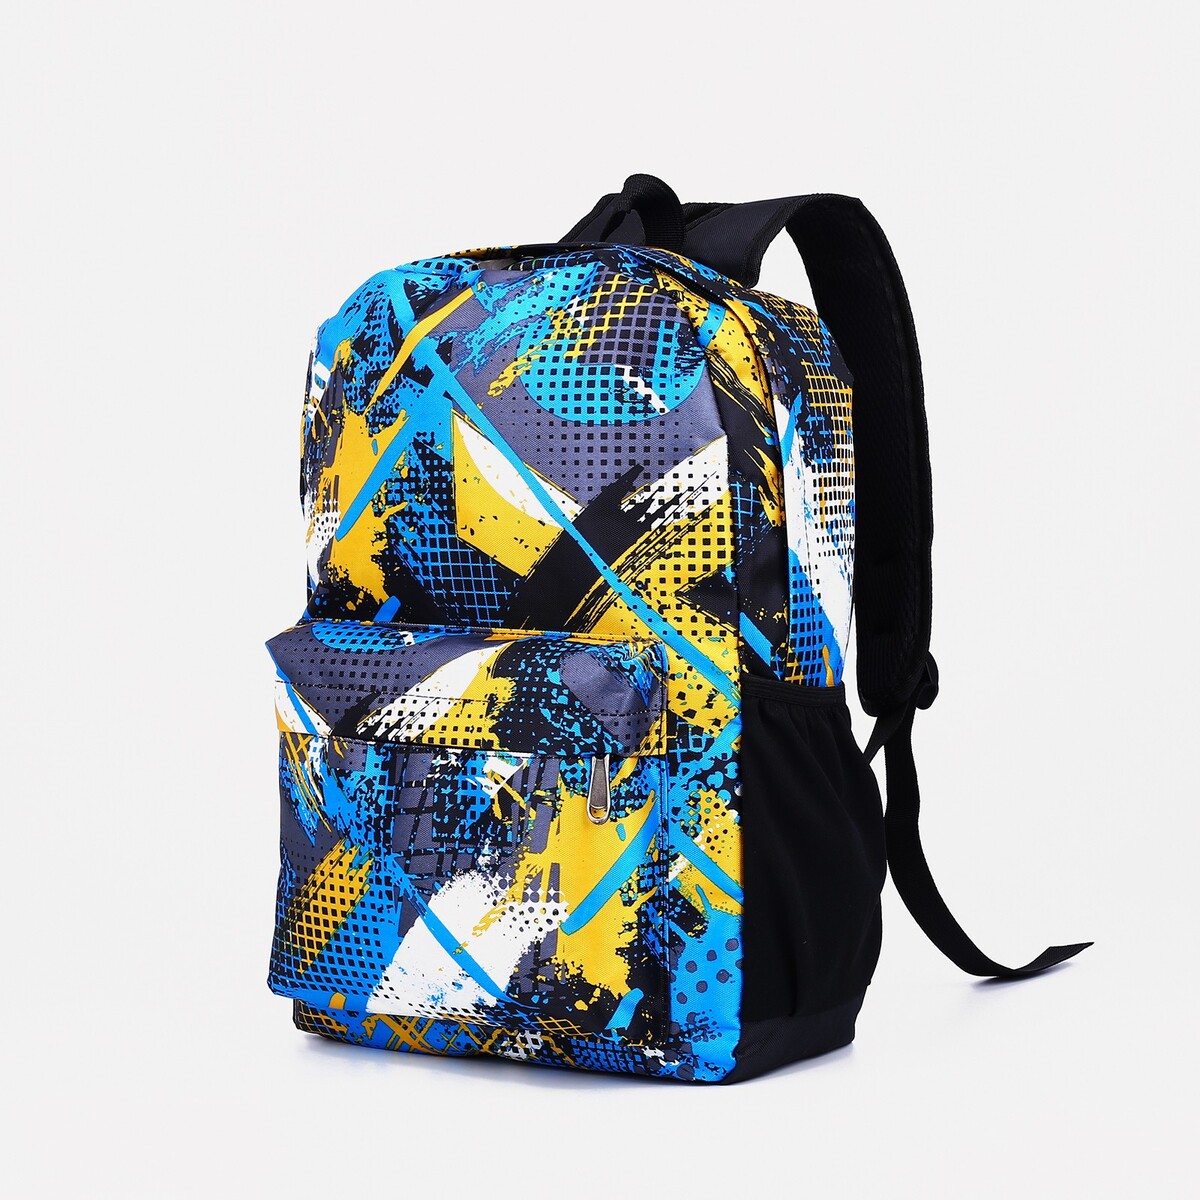 Рюкзак школьный из текстиля на молнии, наружный карман, цвет голубой/желтый